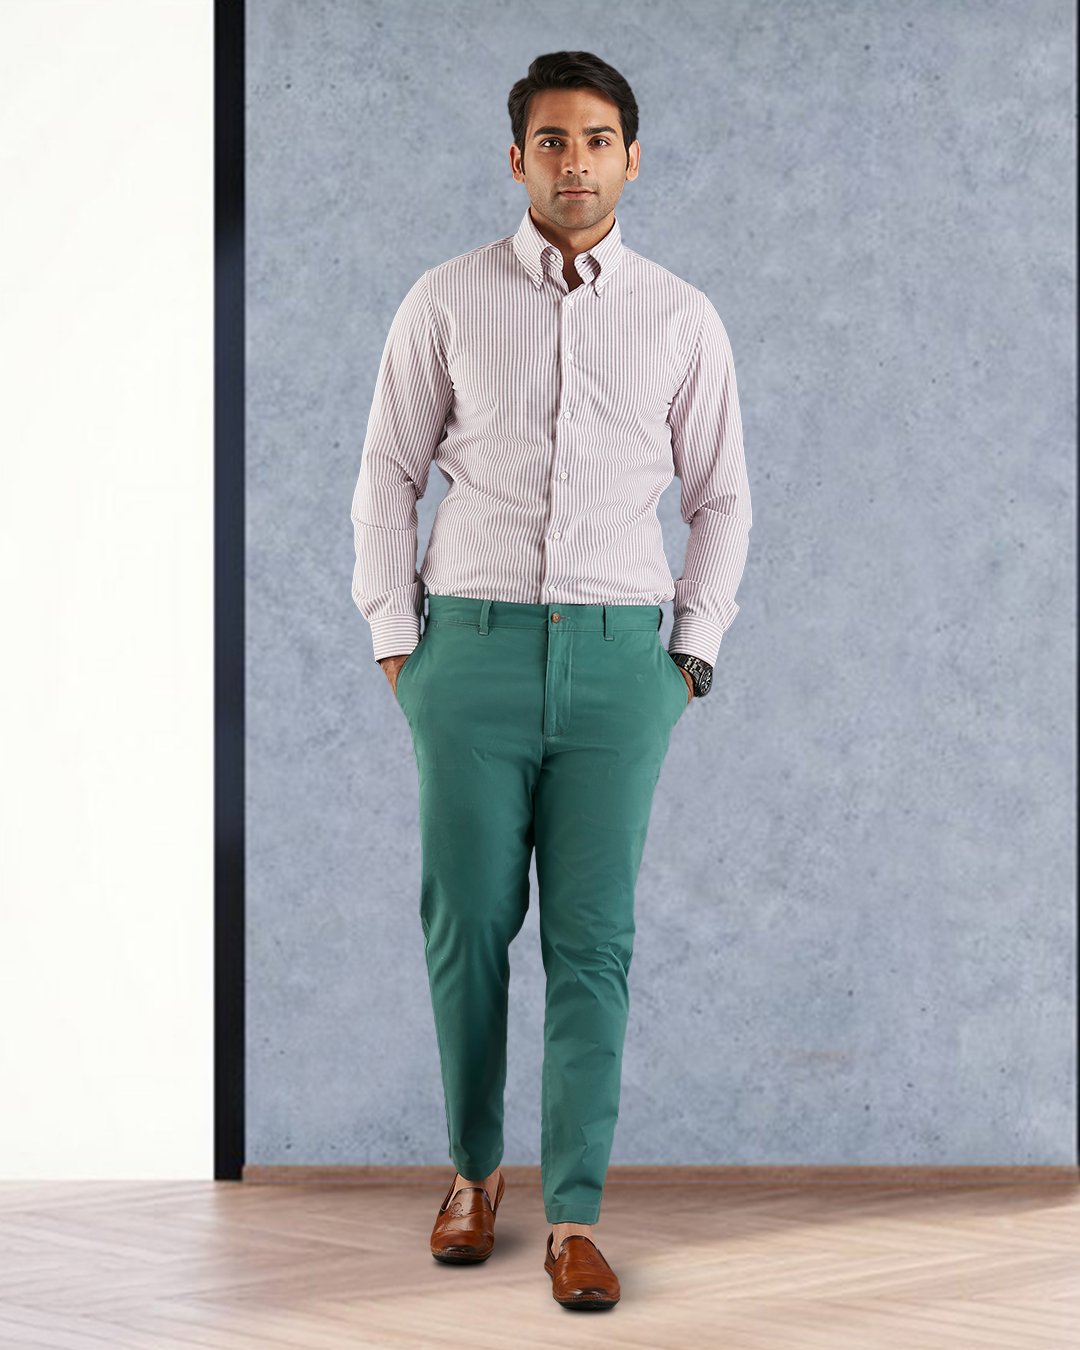 Model wearing custom Genoa Chino pants for men by Luxire in fern green